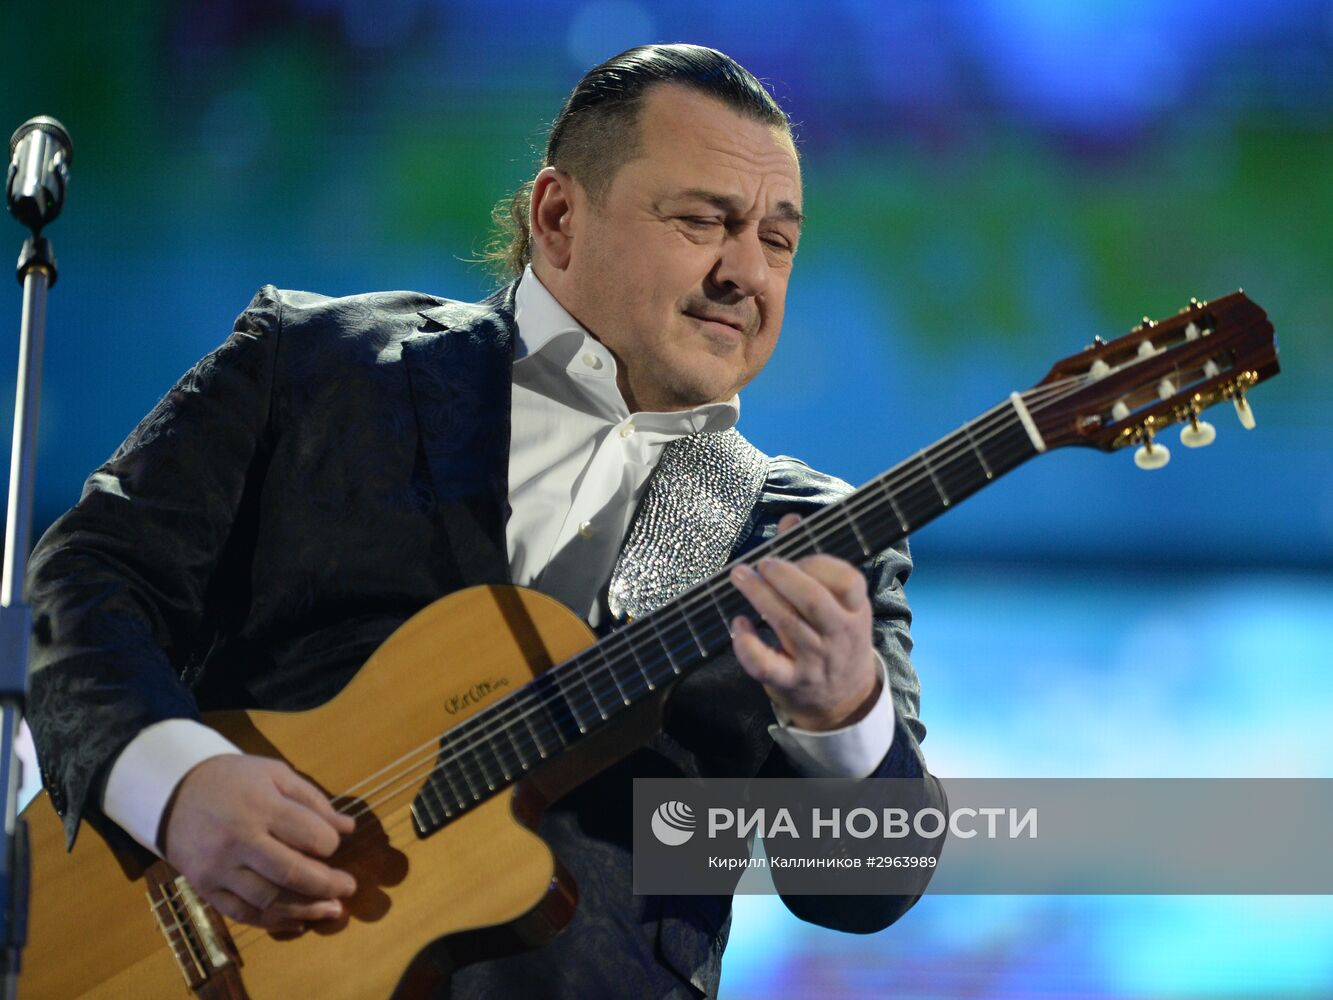 Концерт "25 лет тишины", посвященный памяти певца Игоря Талькова